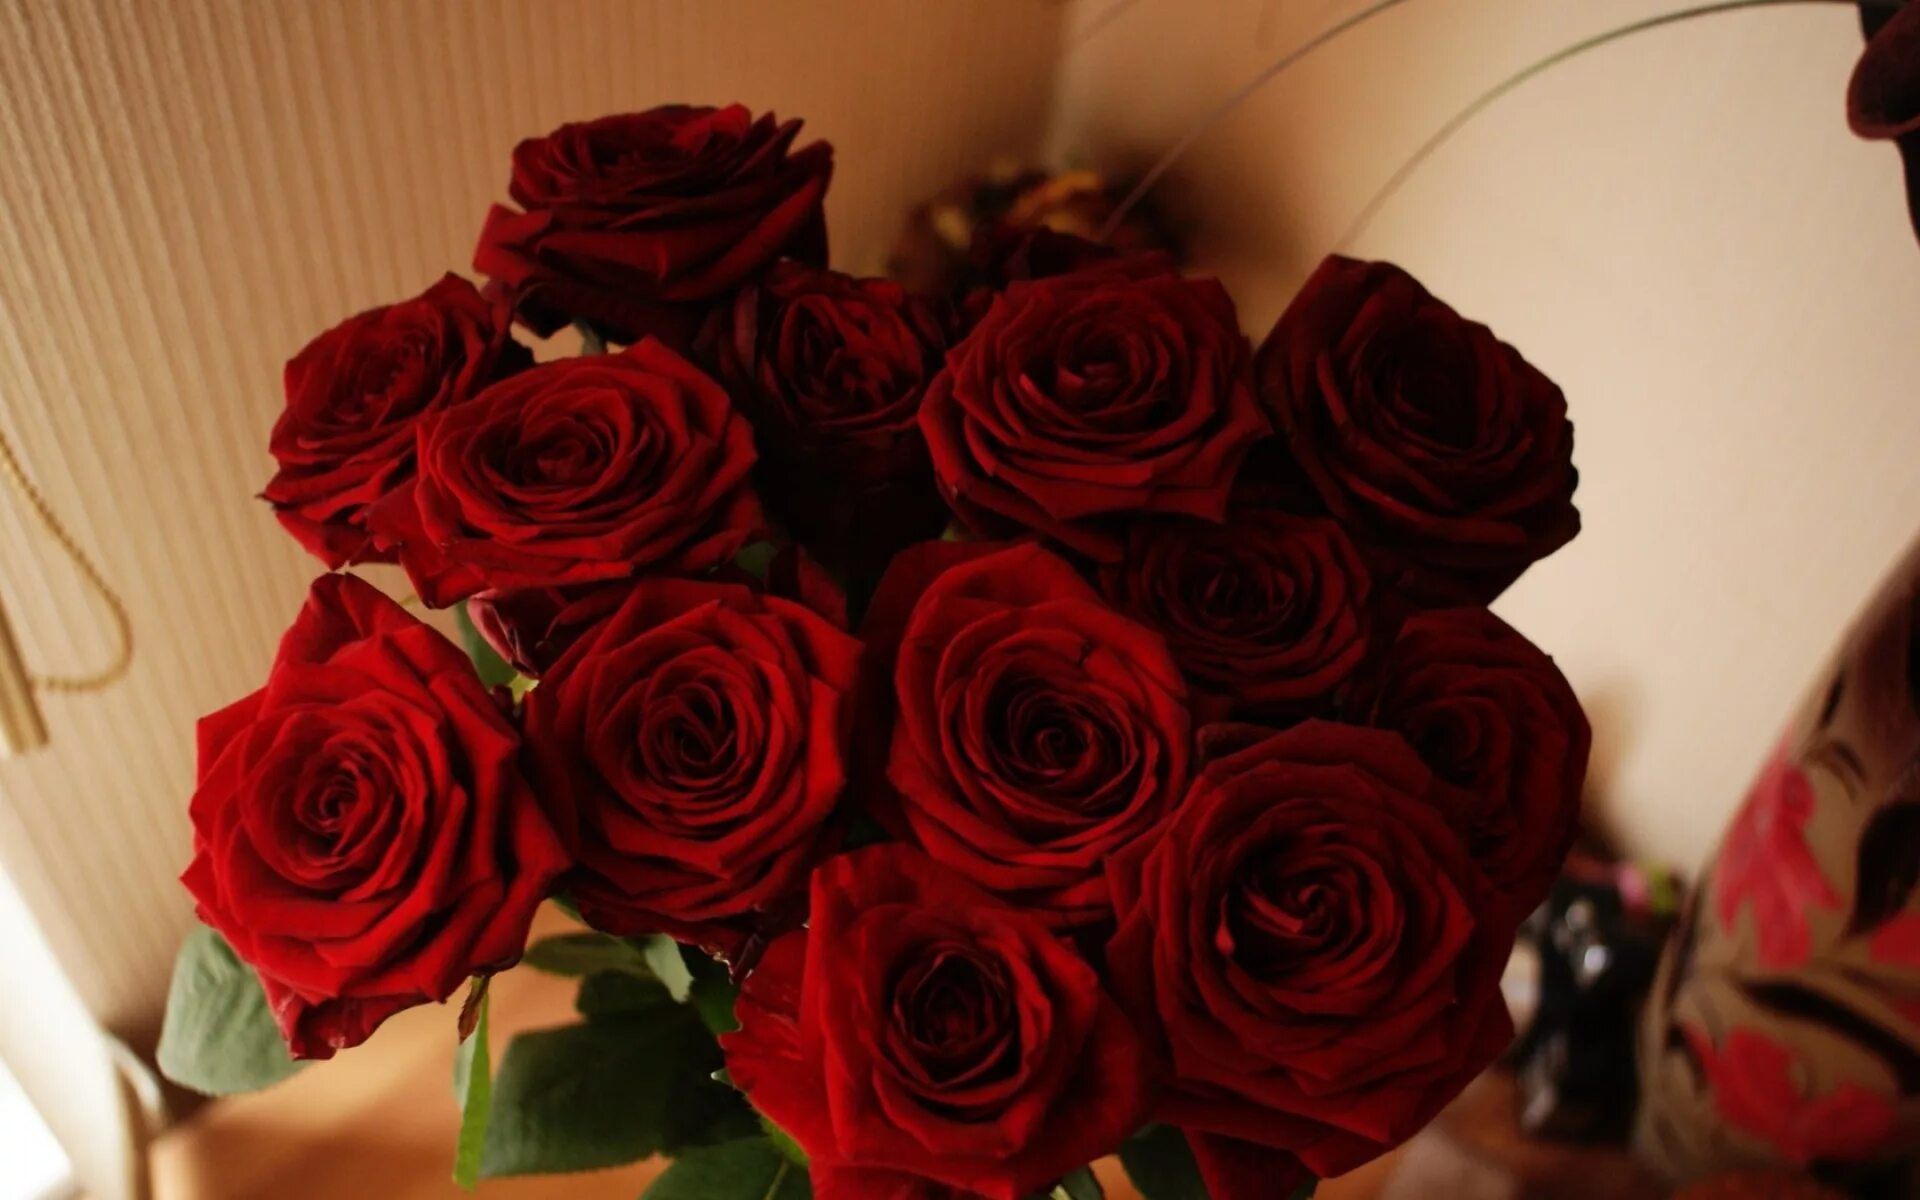 Фото цветов на столе реальные. Букет роз. Красные розы. Букет красных роз на столе.